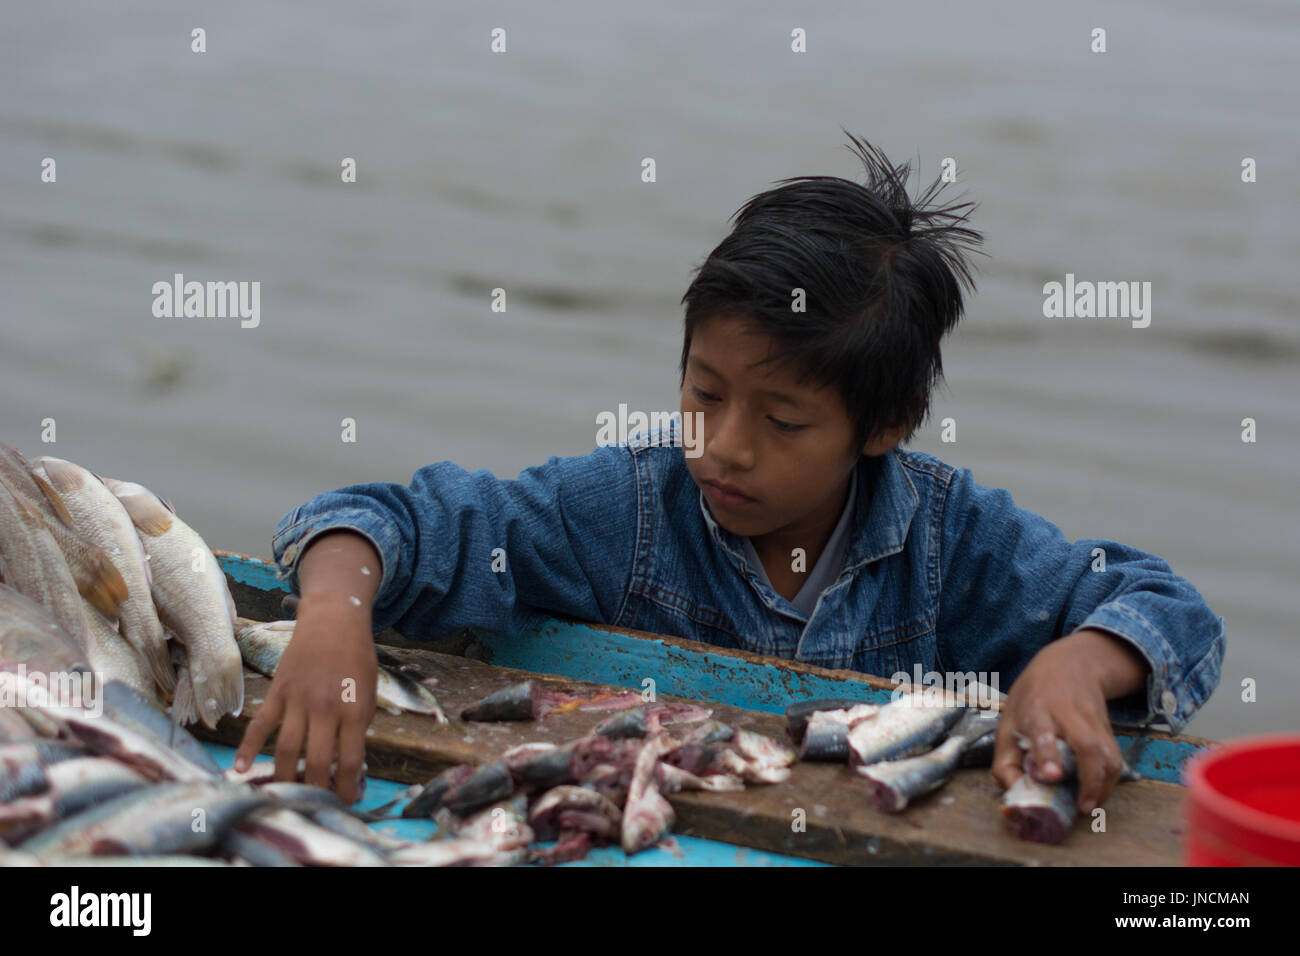 Beach fishing market, Puerto Lopez, Ecuador Stock Photo